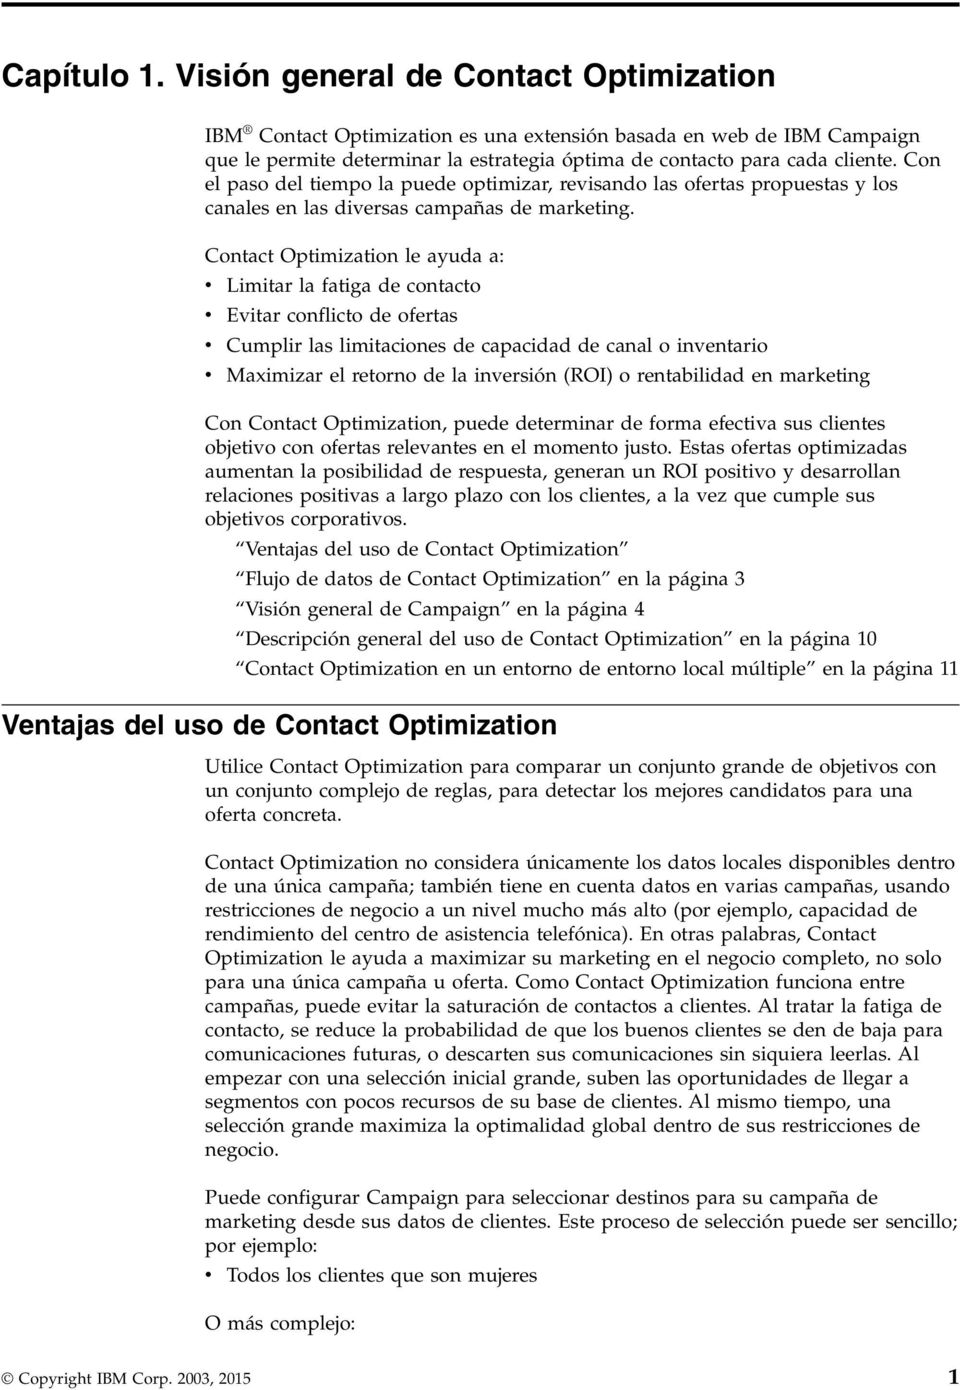 Contact Optimization le ayuda a: Limitar la fatiga de contacto Eitar conflicto de ofertas Cumplir las limitaciones de capacidad de canal o inentario Maximizar el retorno de la inersión (ROI) o